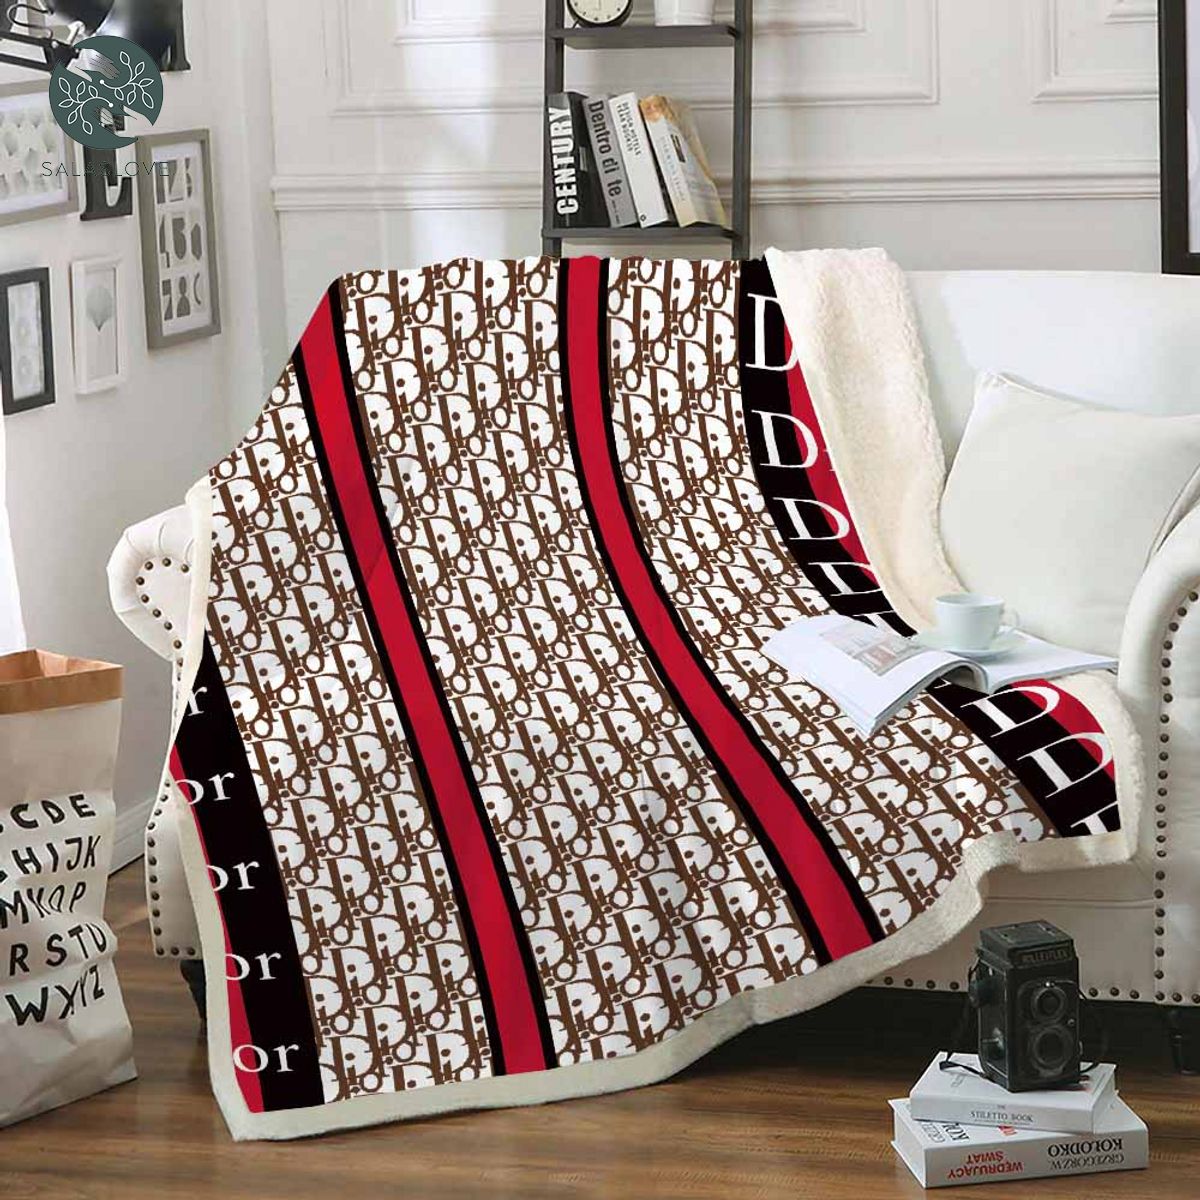 Dior Luxruy Bedding Bedroom Blanket

